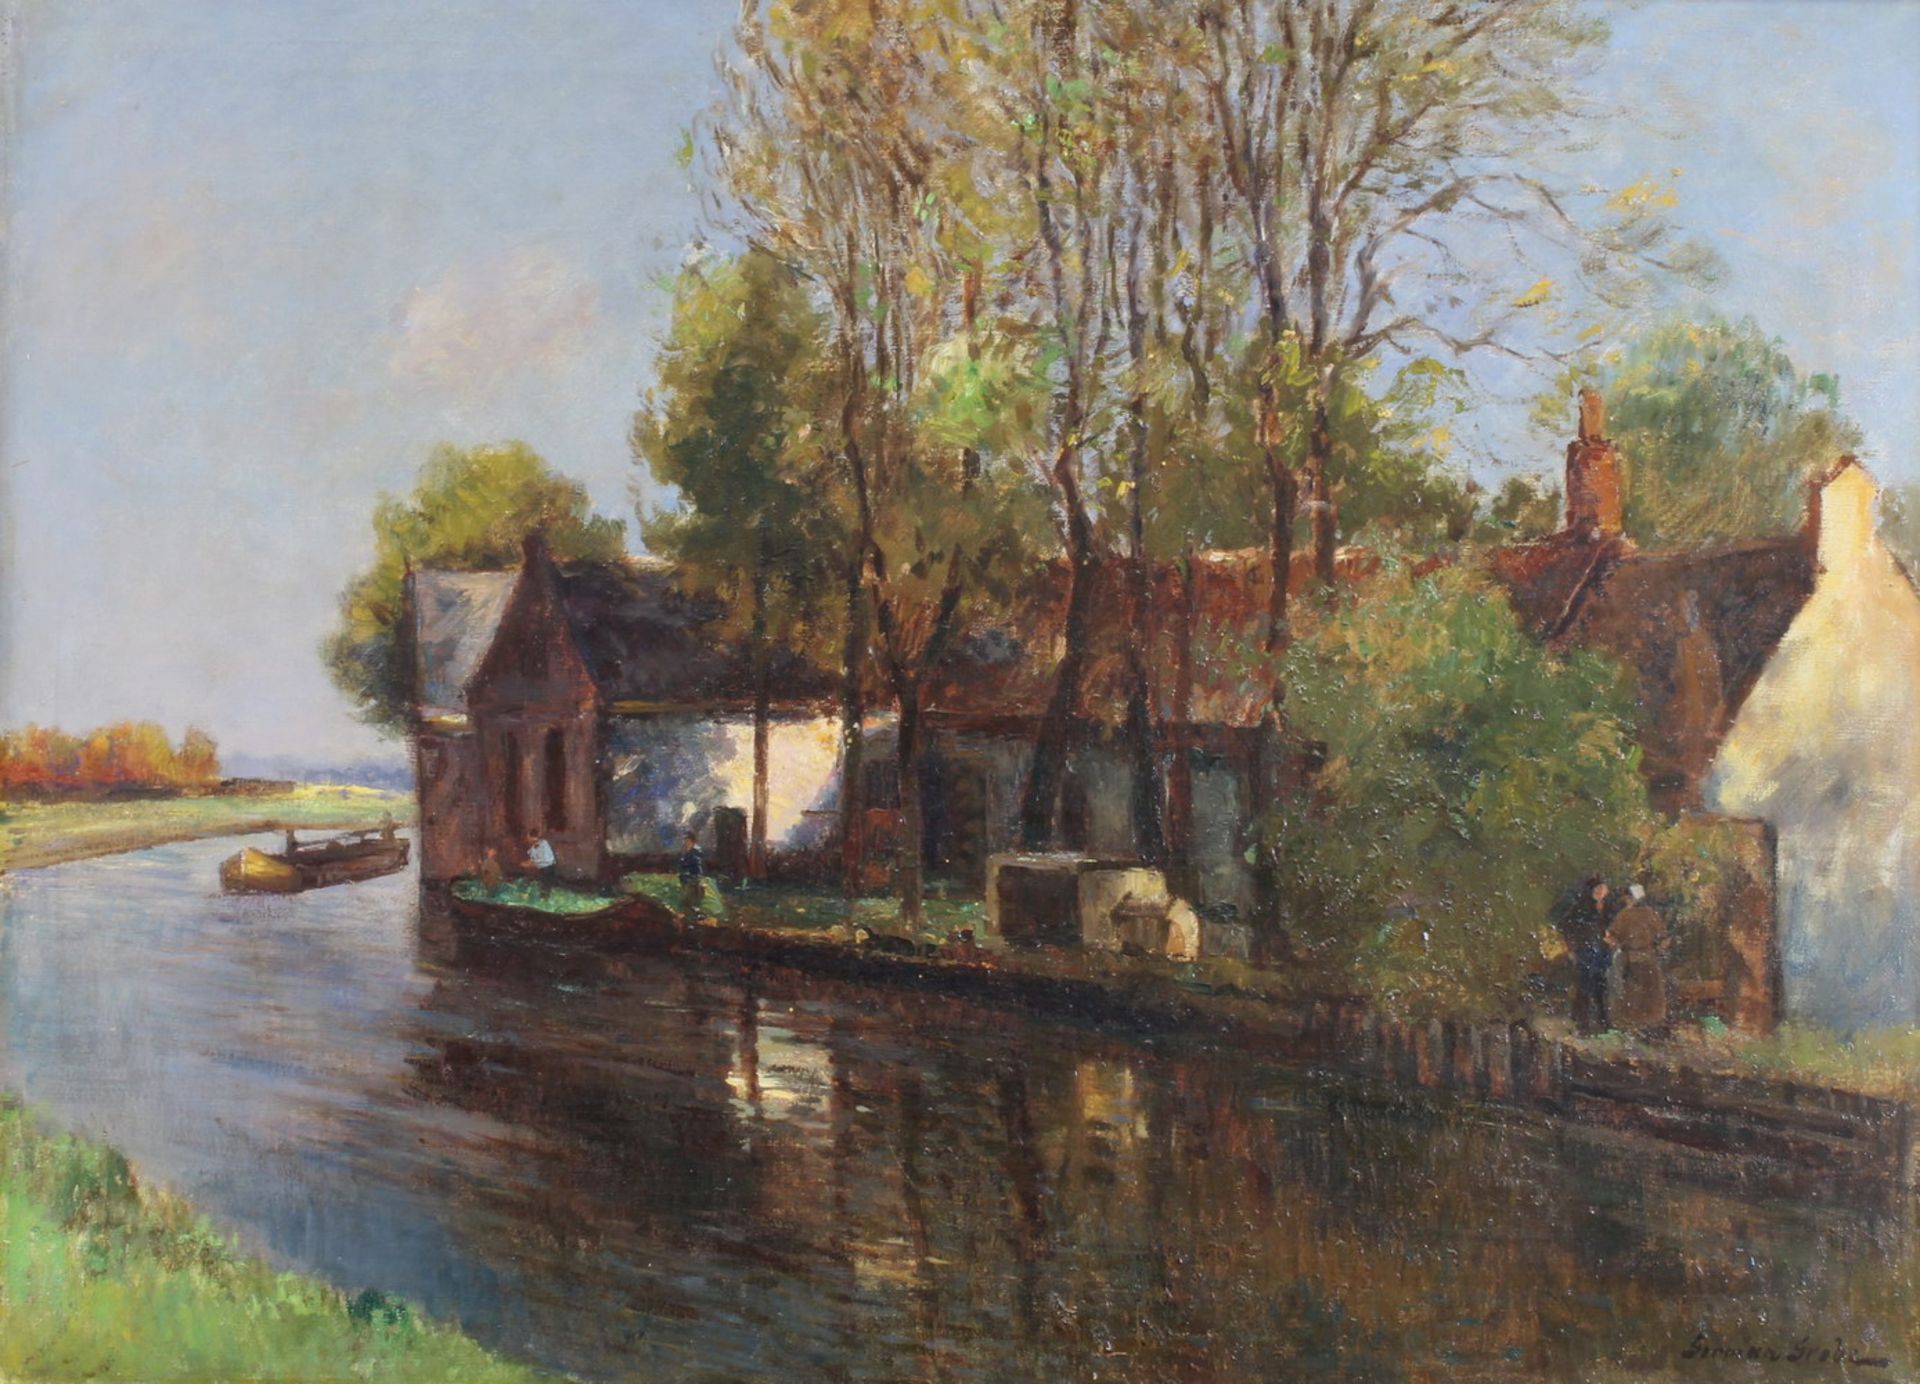 Grobe, German (1857 Hanau - 1938 Düsseldorf, Landschafts- u. Marinemaler, malte mit Vorliebe